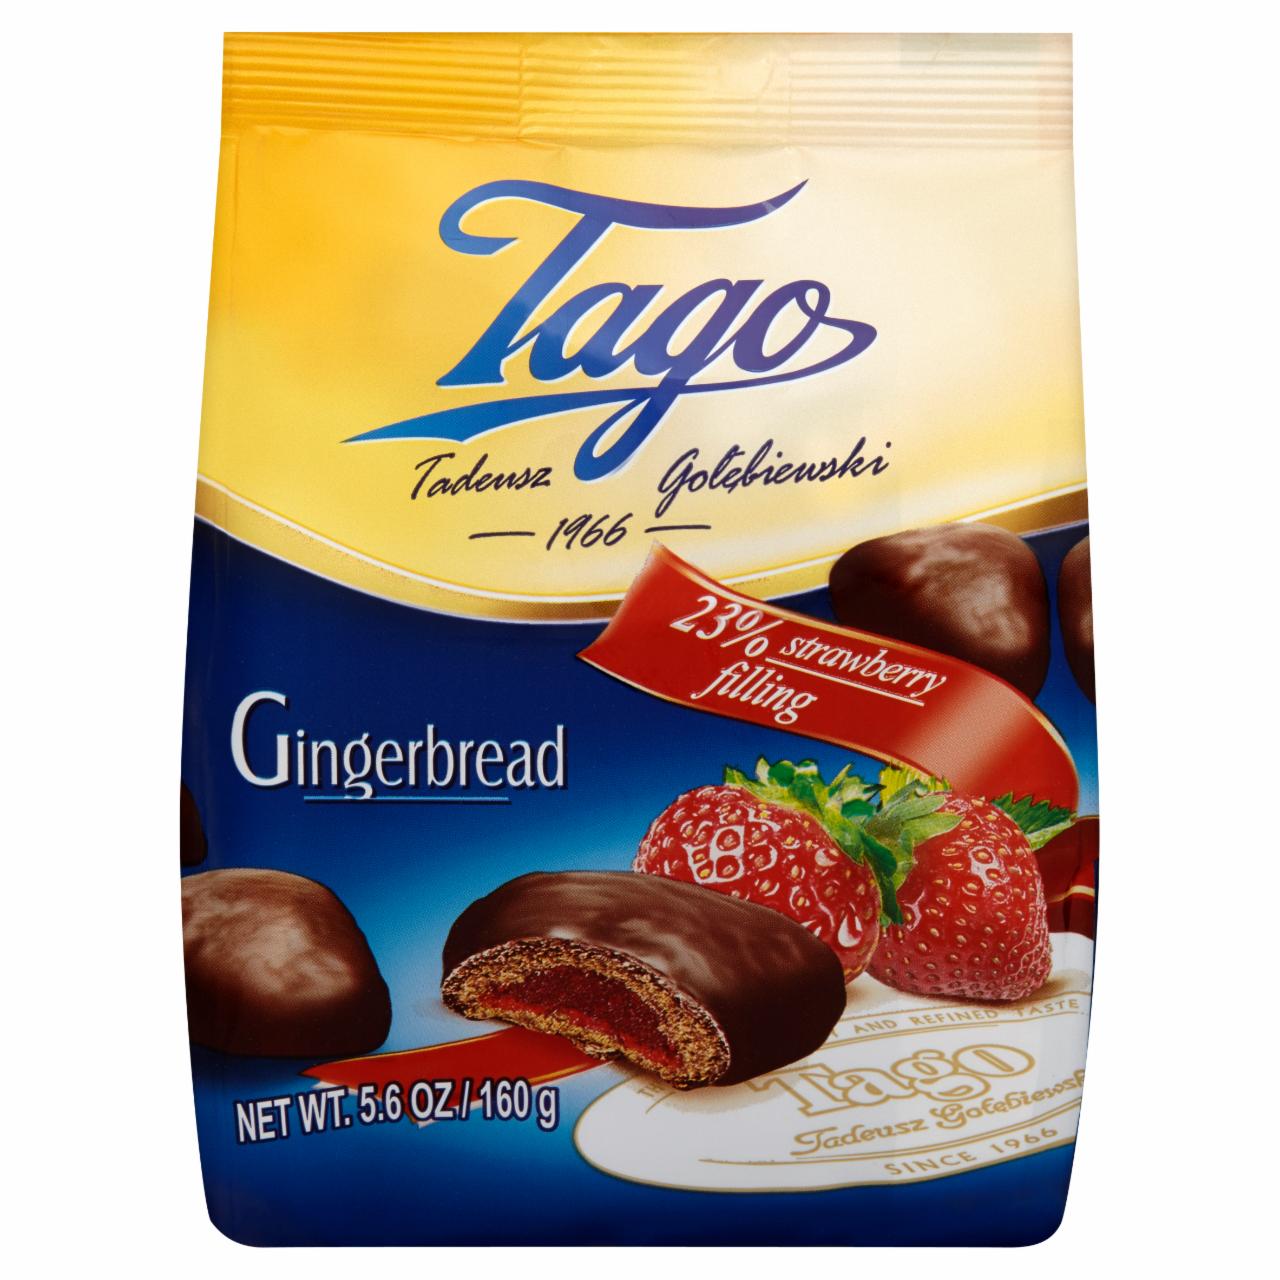 Фото - Gingerbread пряники в шоколадной глазури с клубничной начинкой TG